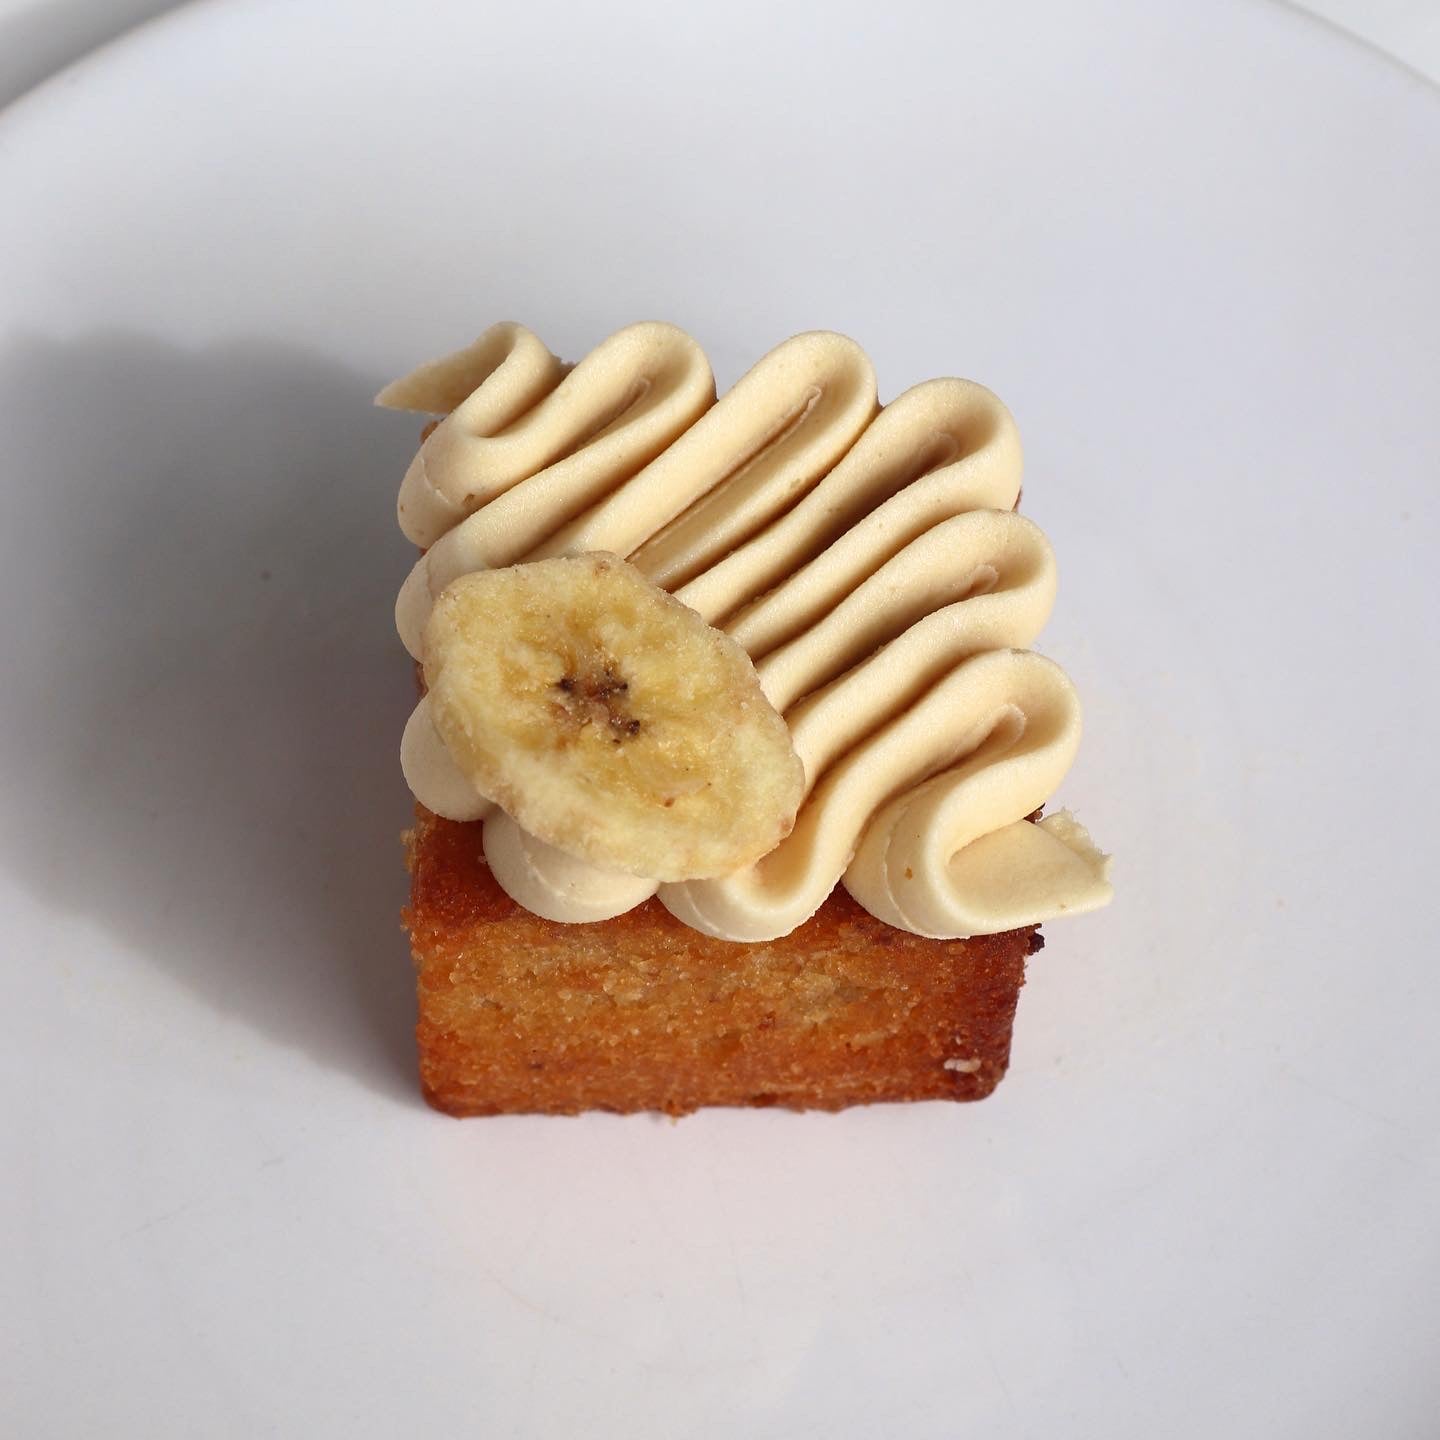 Banana, Almond and Banana Salted Caramel Mini Cake